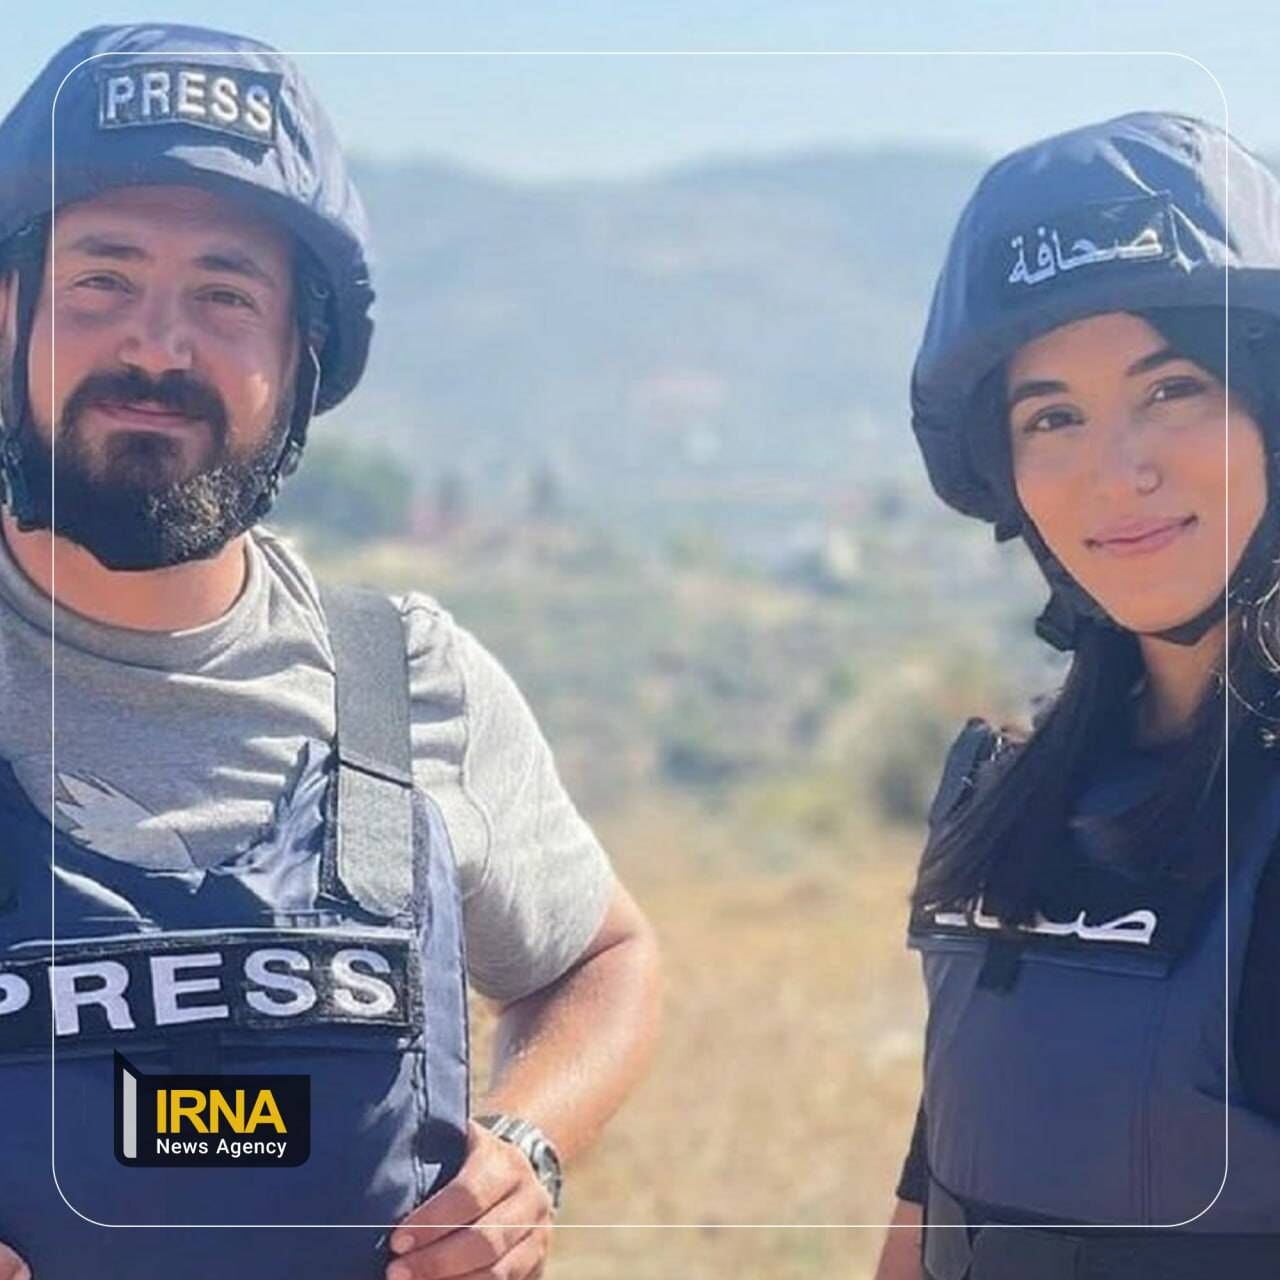 لبنان میں المیادین نیوز ٹیم پر اسرائیلی فوج کا حملہ/ ایک کیمرہ مین اور ایک رپورٹر شہید